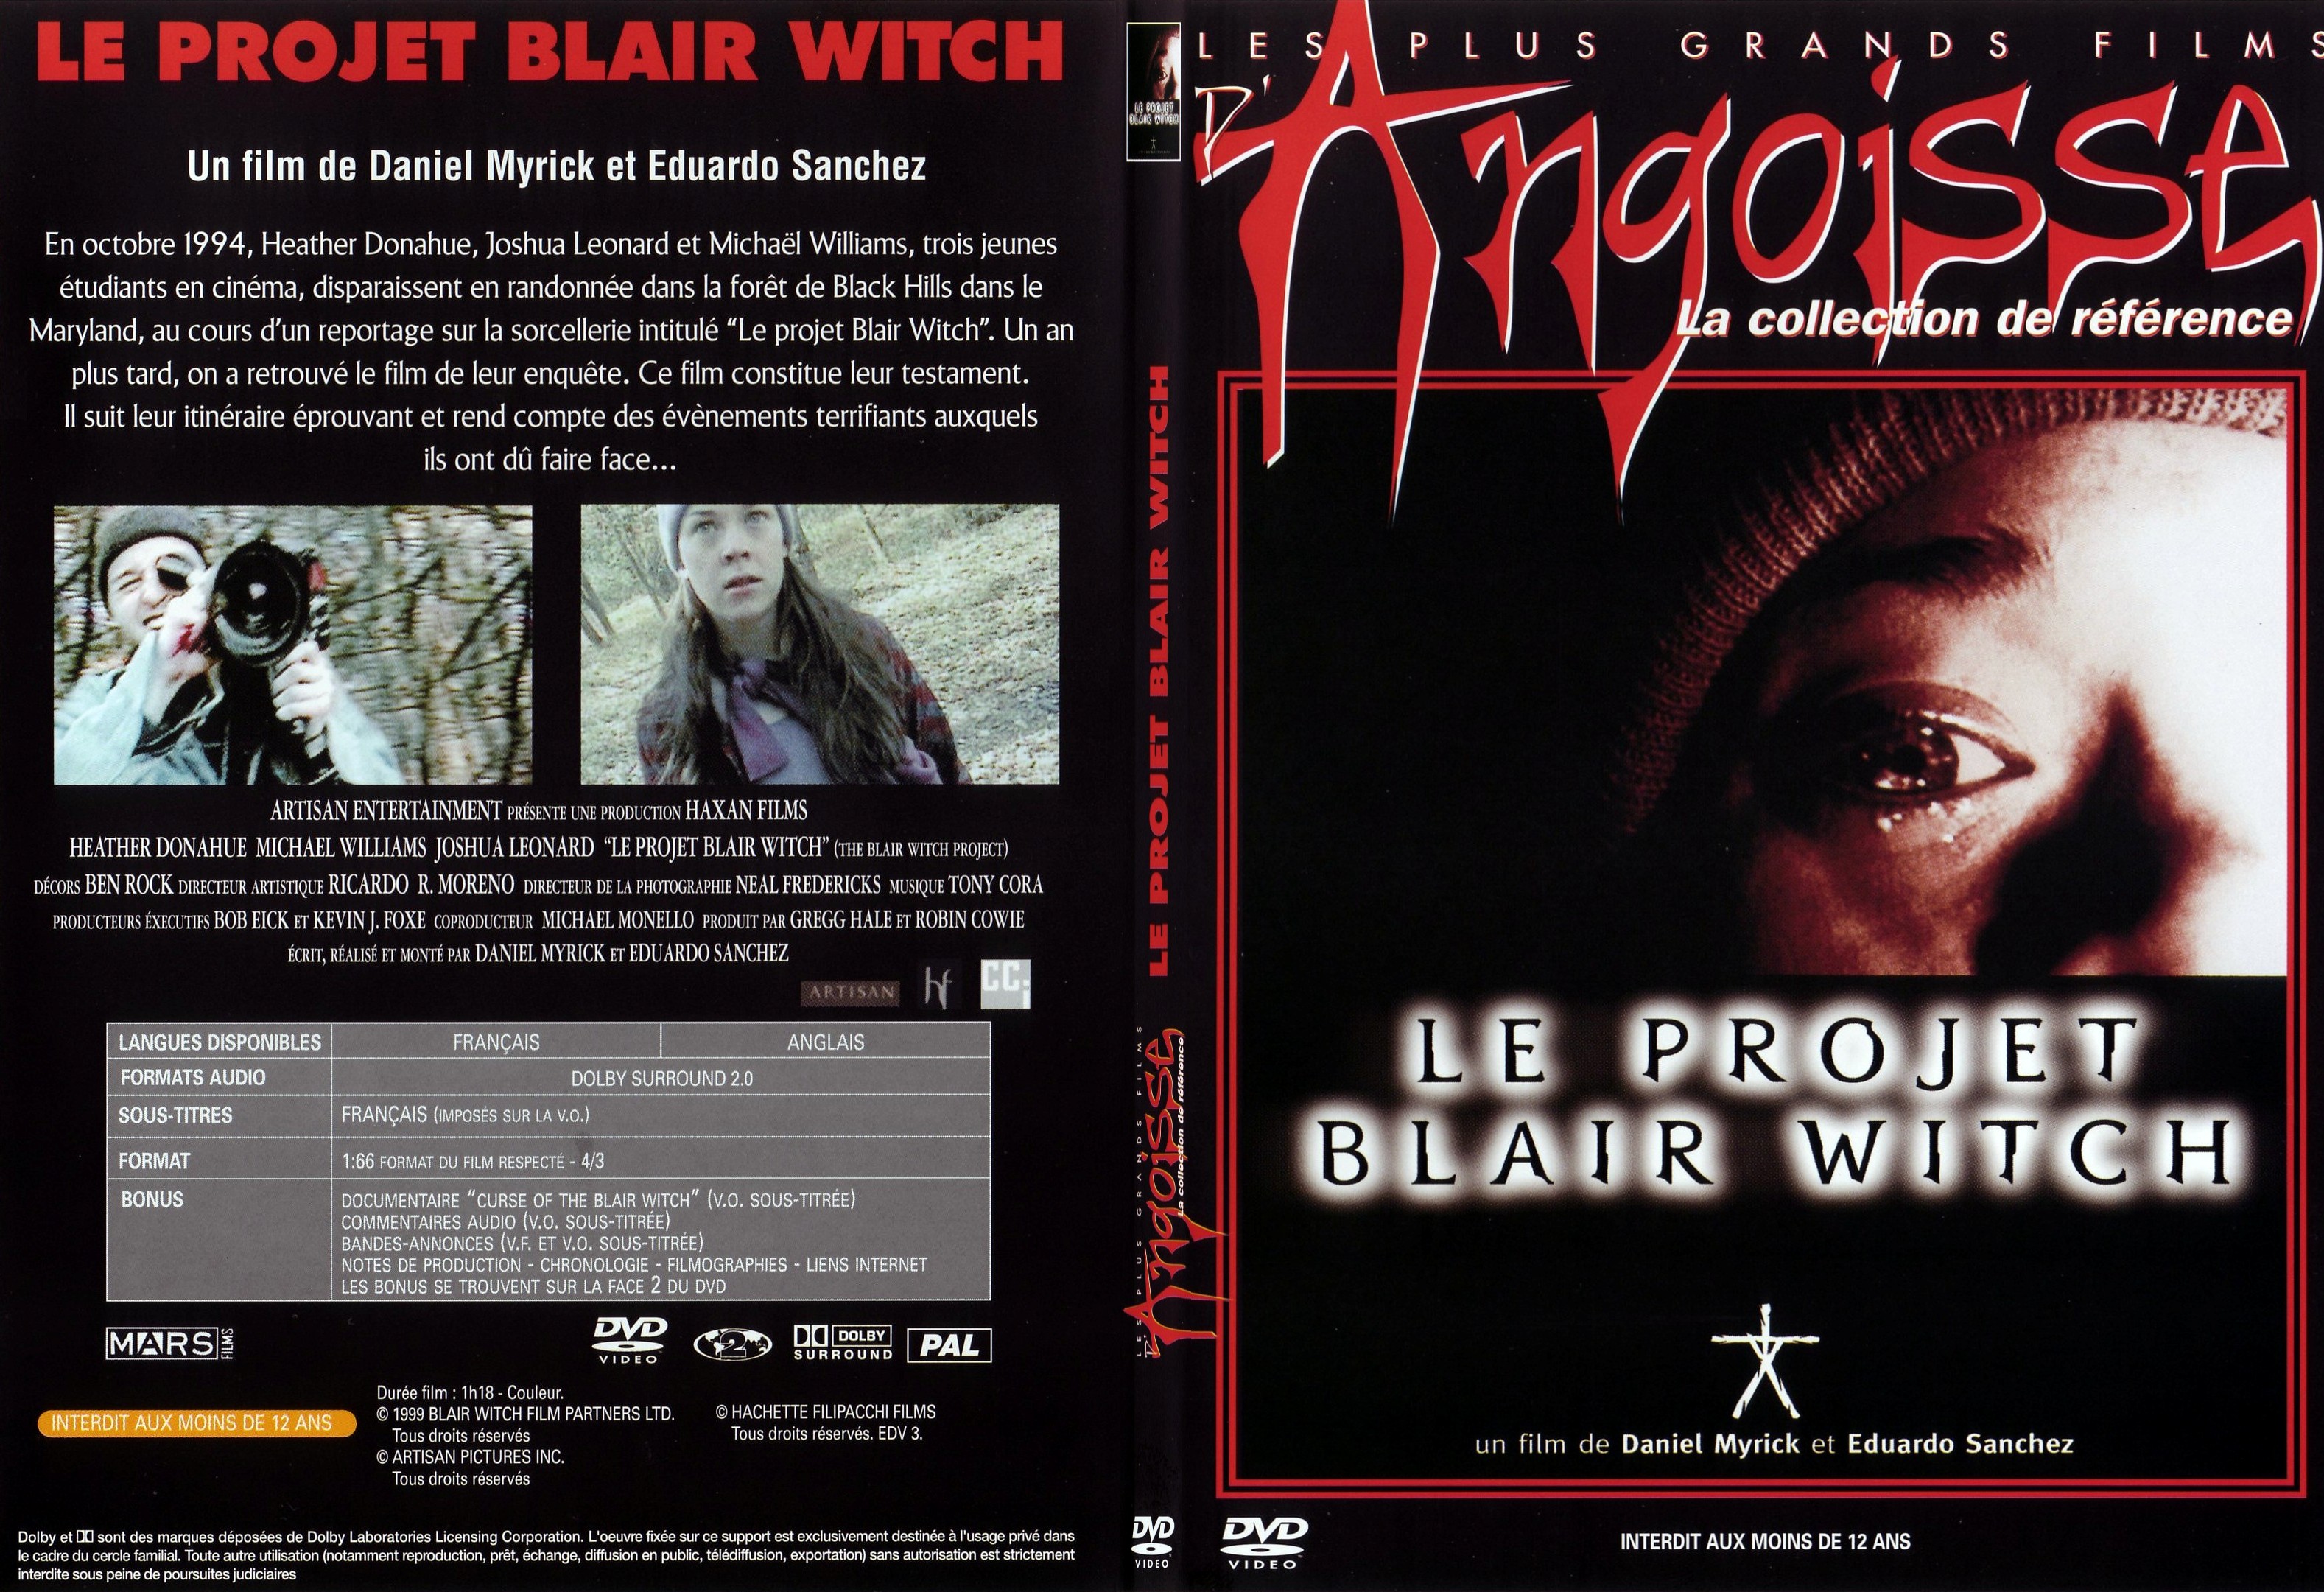 Jaquette DVD Le projet blair witch - SLIM